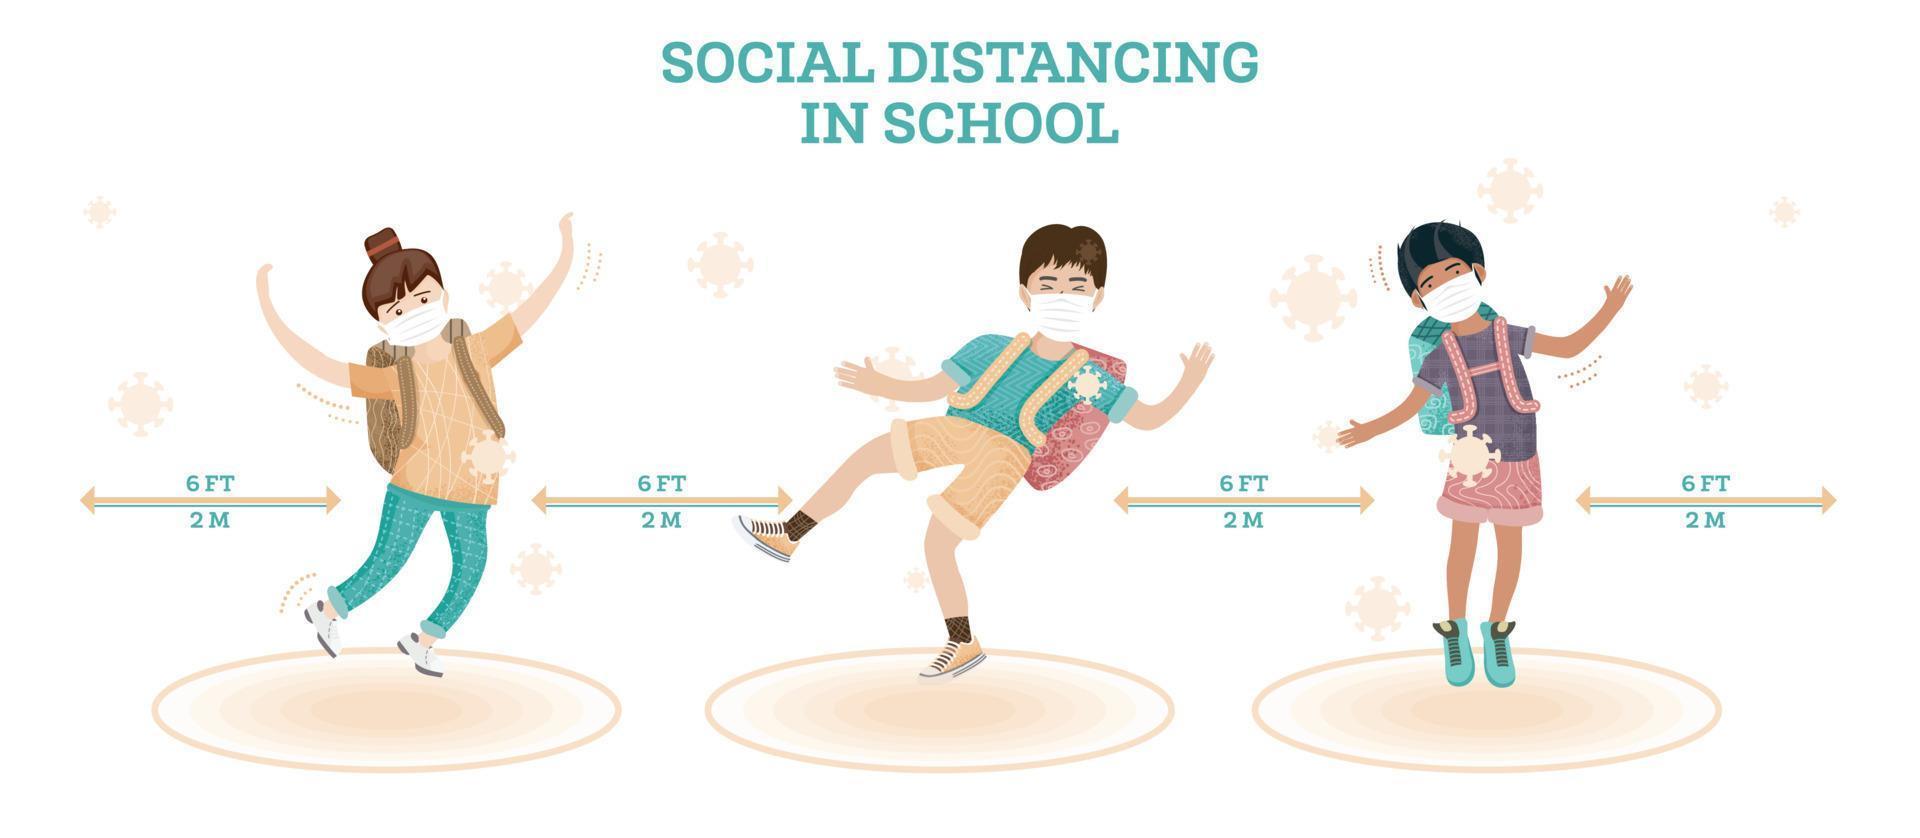 los niños y las niñas juegan juntos y saltan. nueva normalidad en la escuela. concepto de distanciamiento social. vector